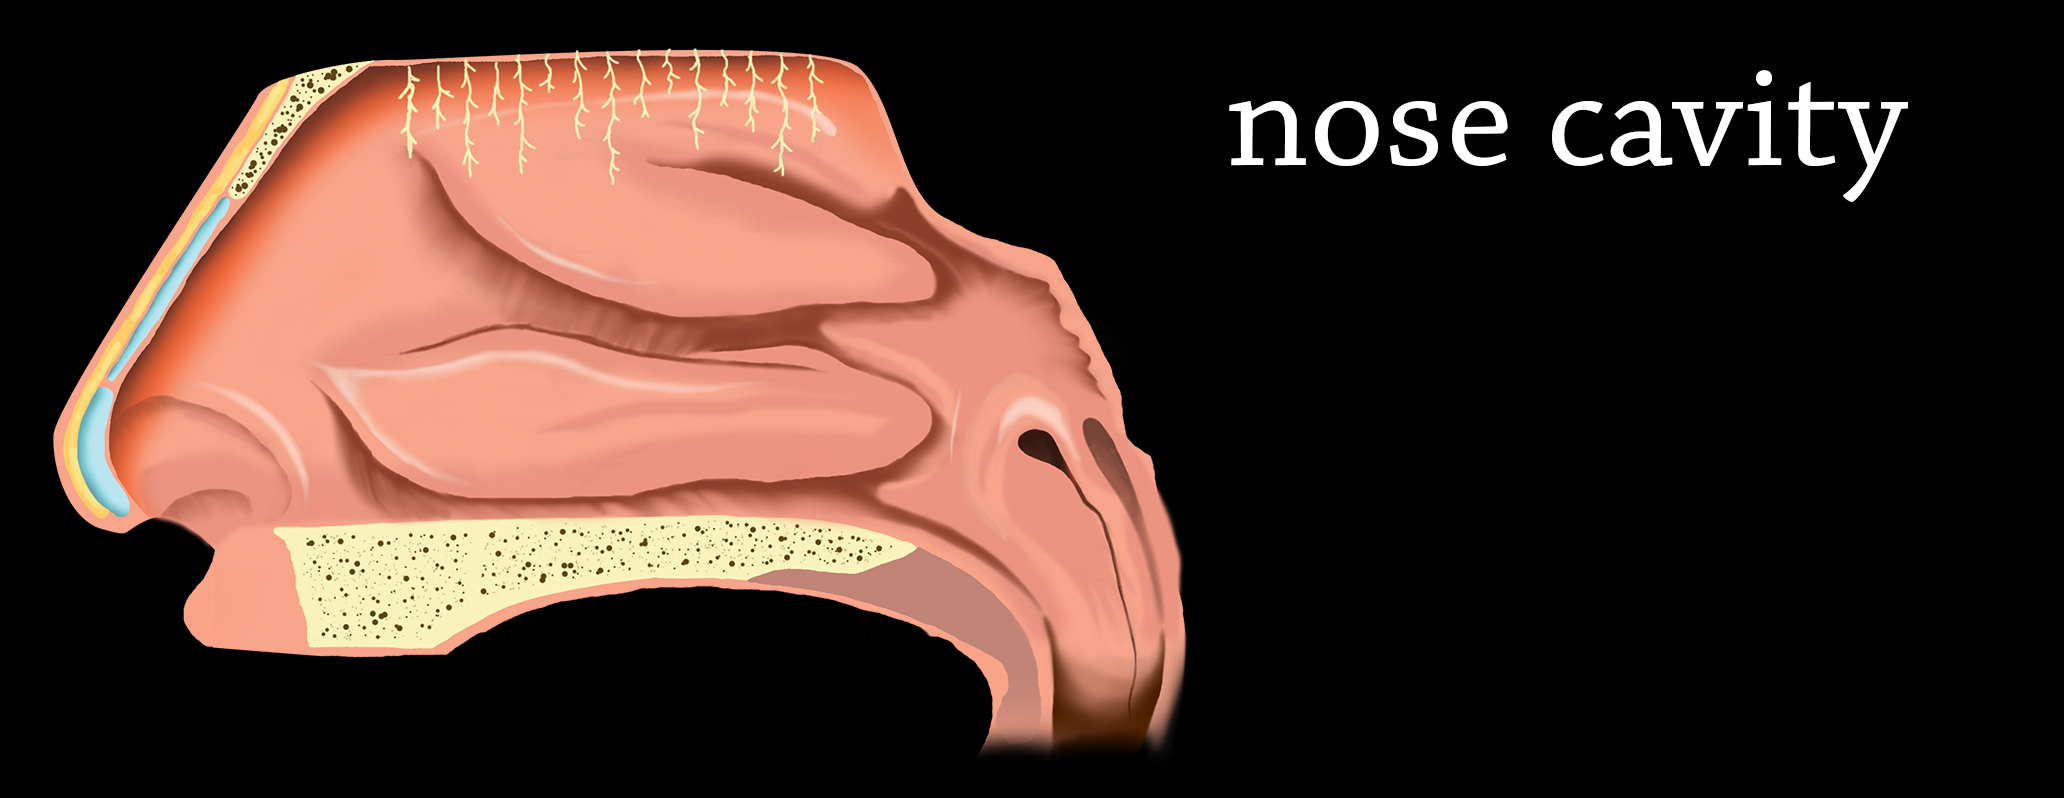 illustrazione 2Da mano libera: cavità nasale, peluzzi olfattivi non in scala per esigenze comunicative. Vista medio-latrale